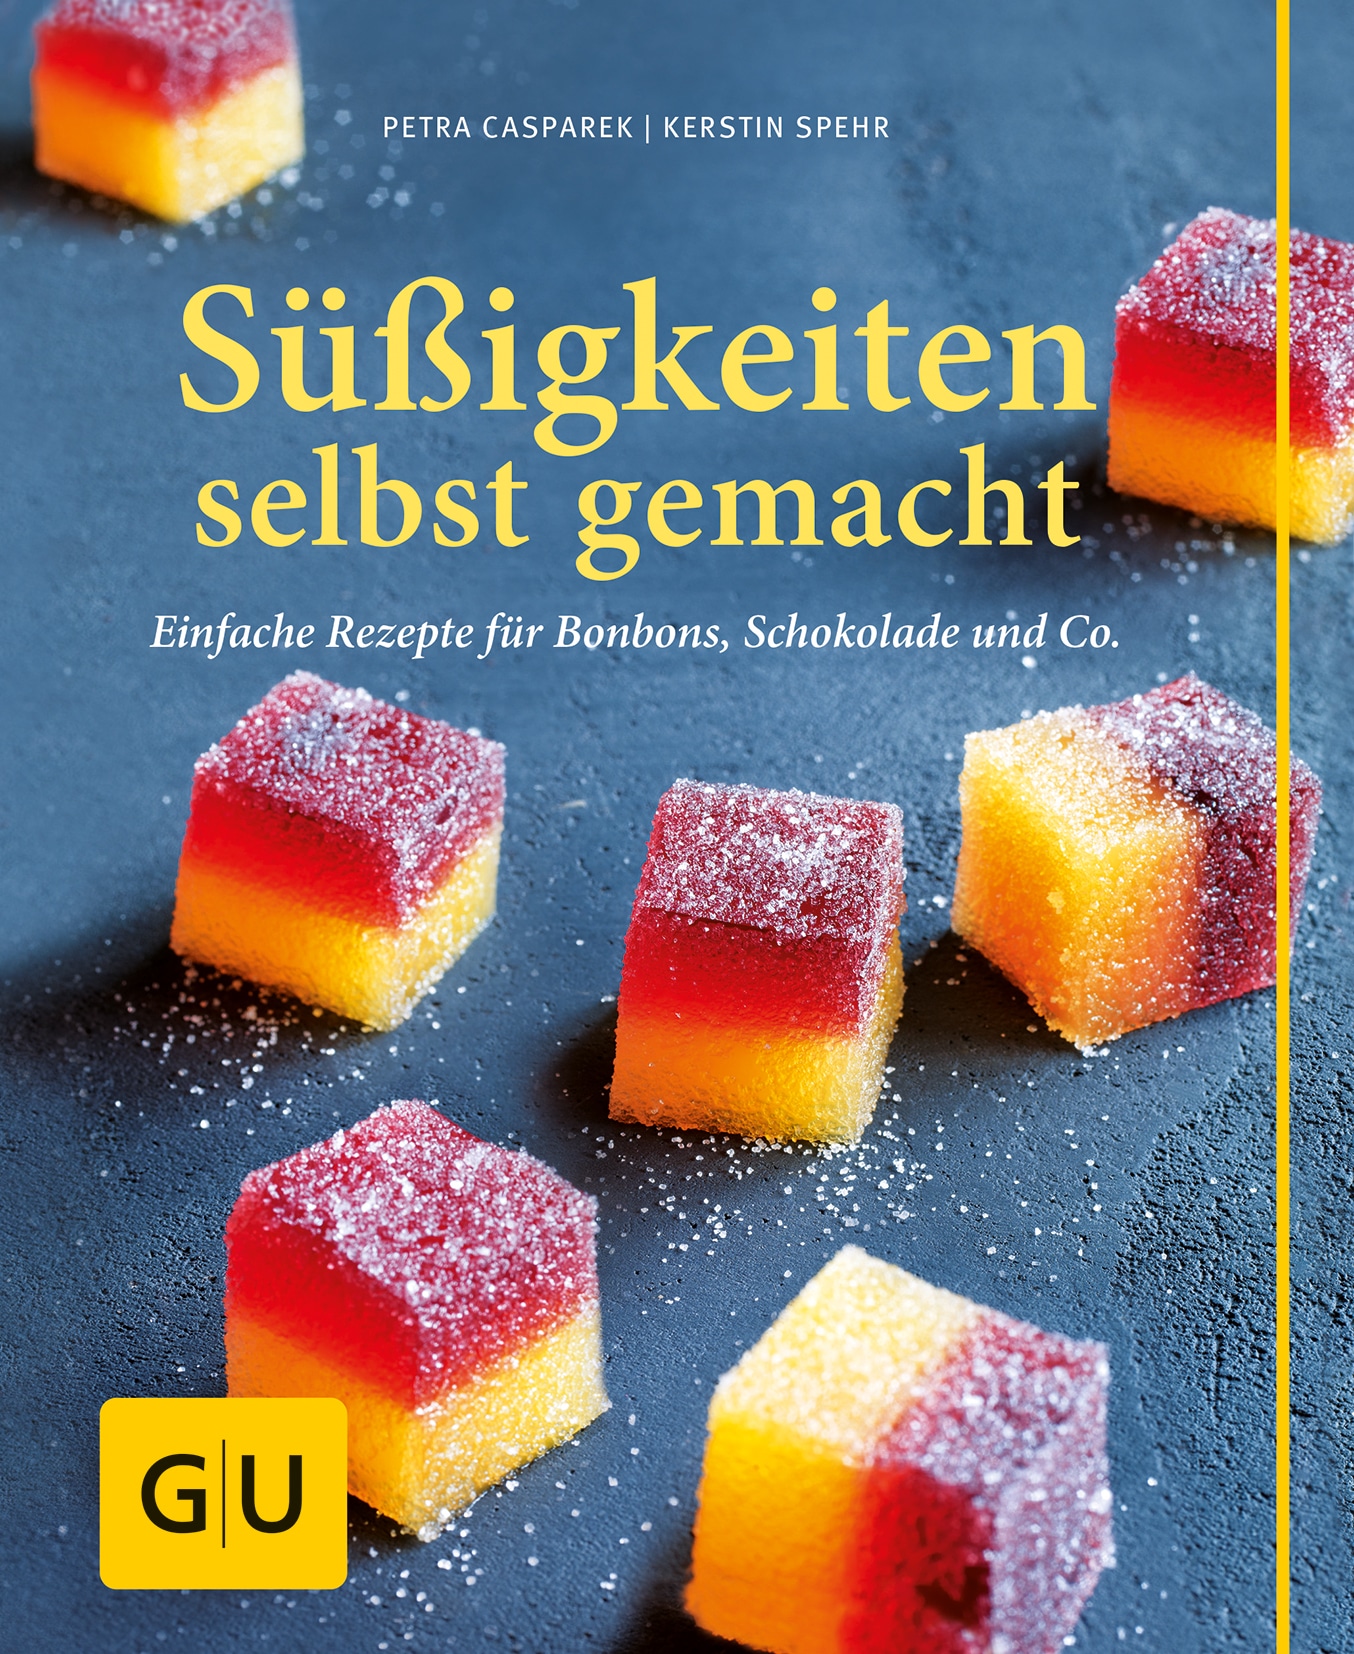 Süßigkeiten selbst gemacht - Petra Casparek - GU Online-Shop